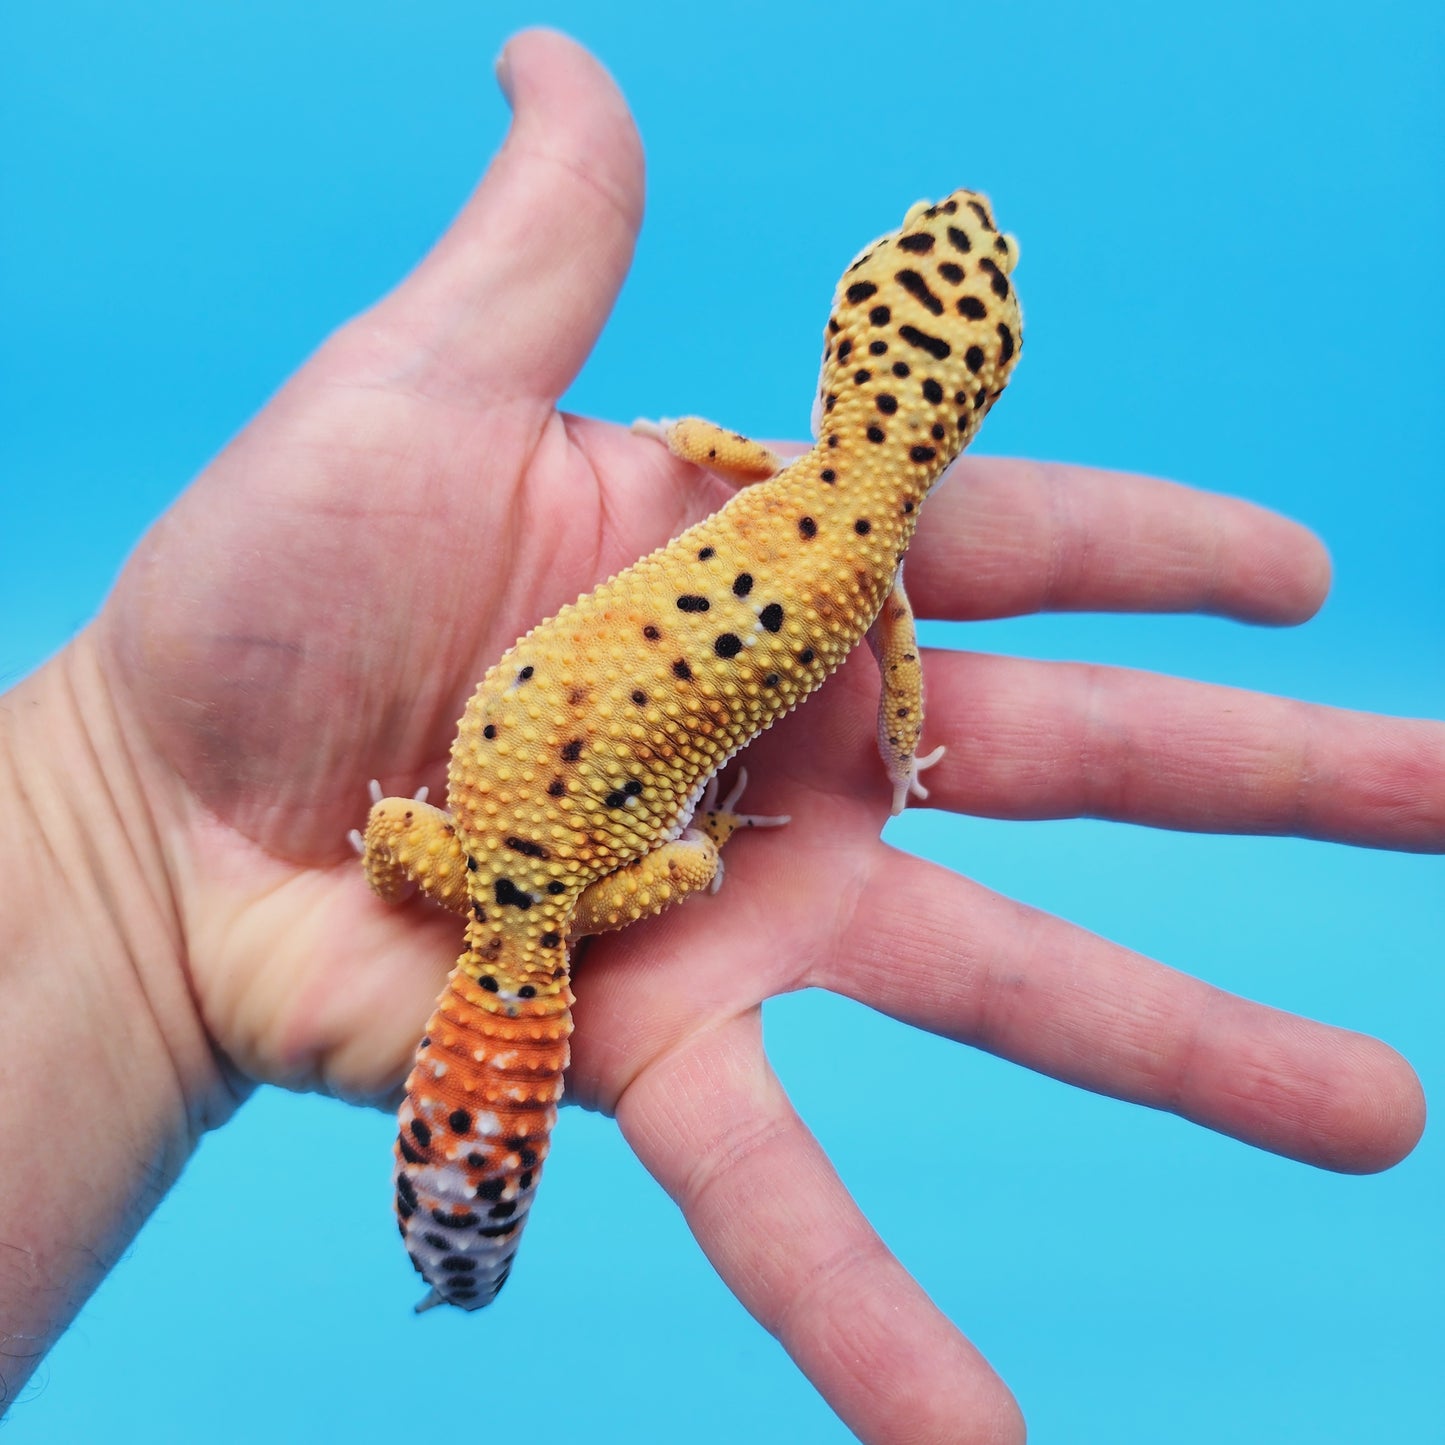 Female Inferno Tangerine Bold Cross Leopard Gecko